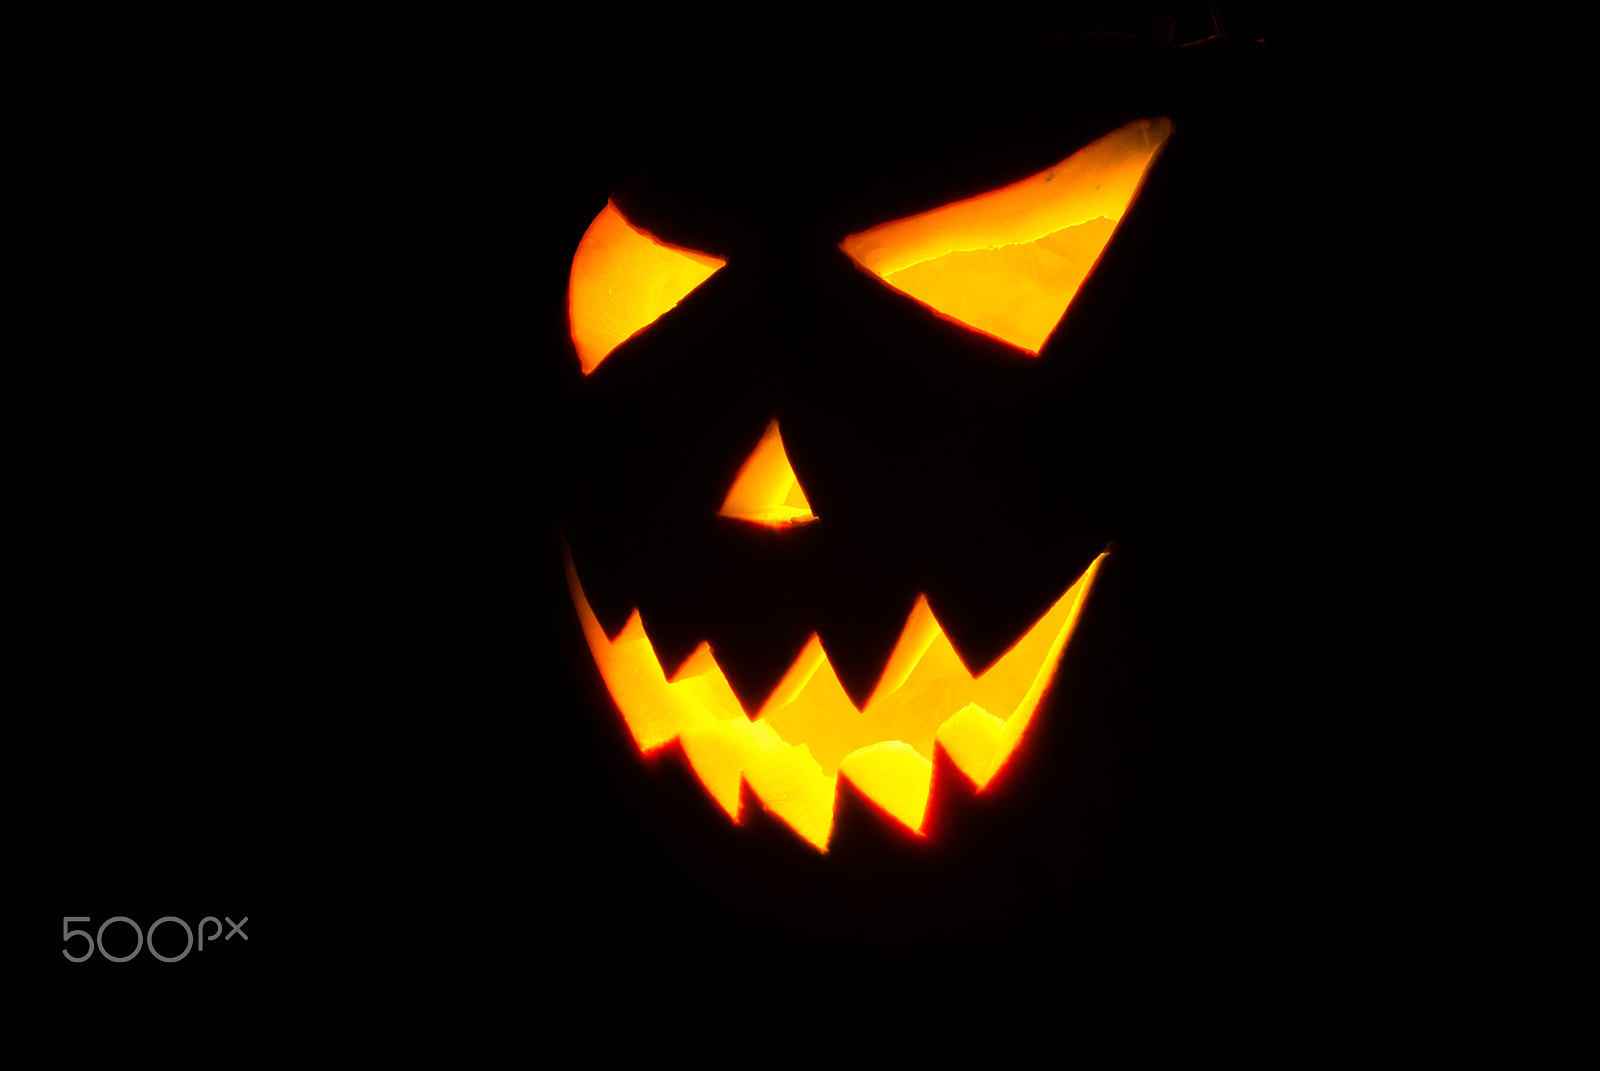 Nikon D80 + AF Nikkor 50mm f/1.8 N sample photo. Halloween jack-o-lantern on a black background, photography